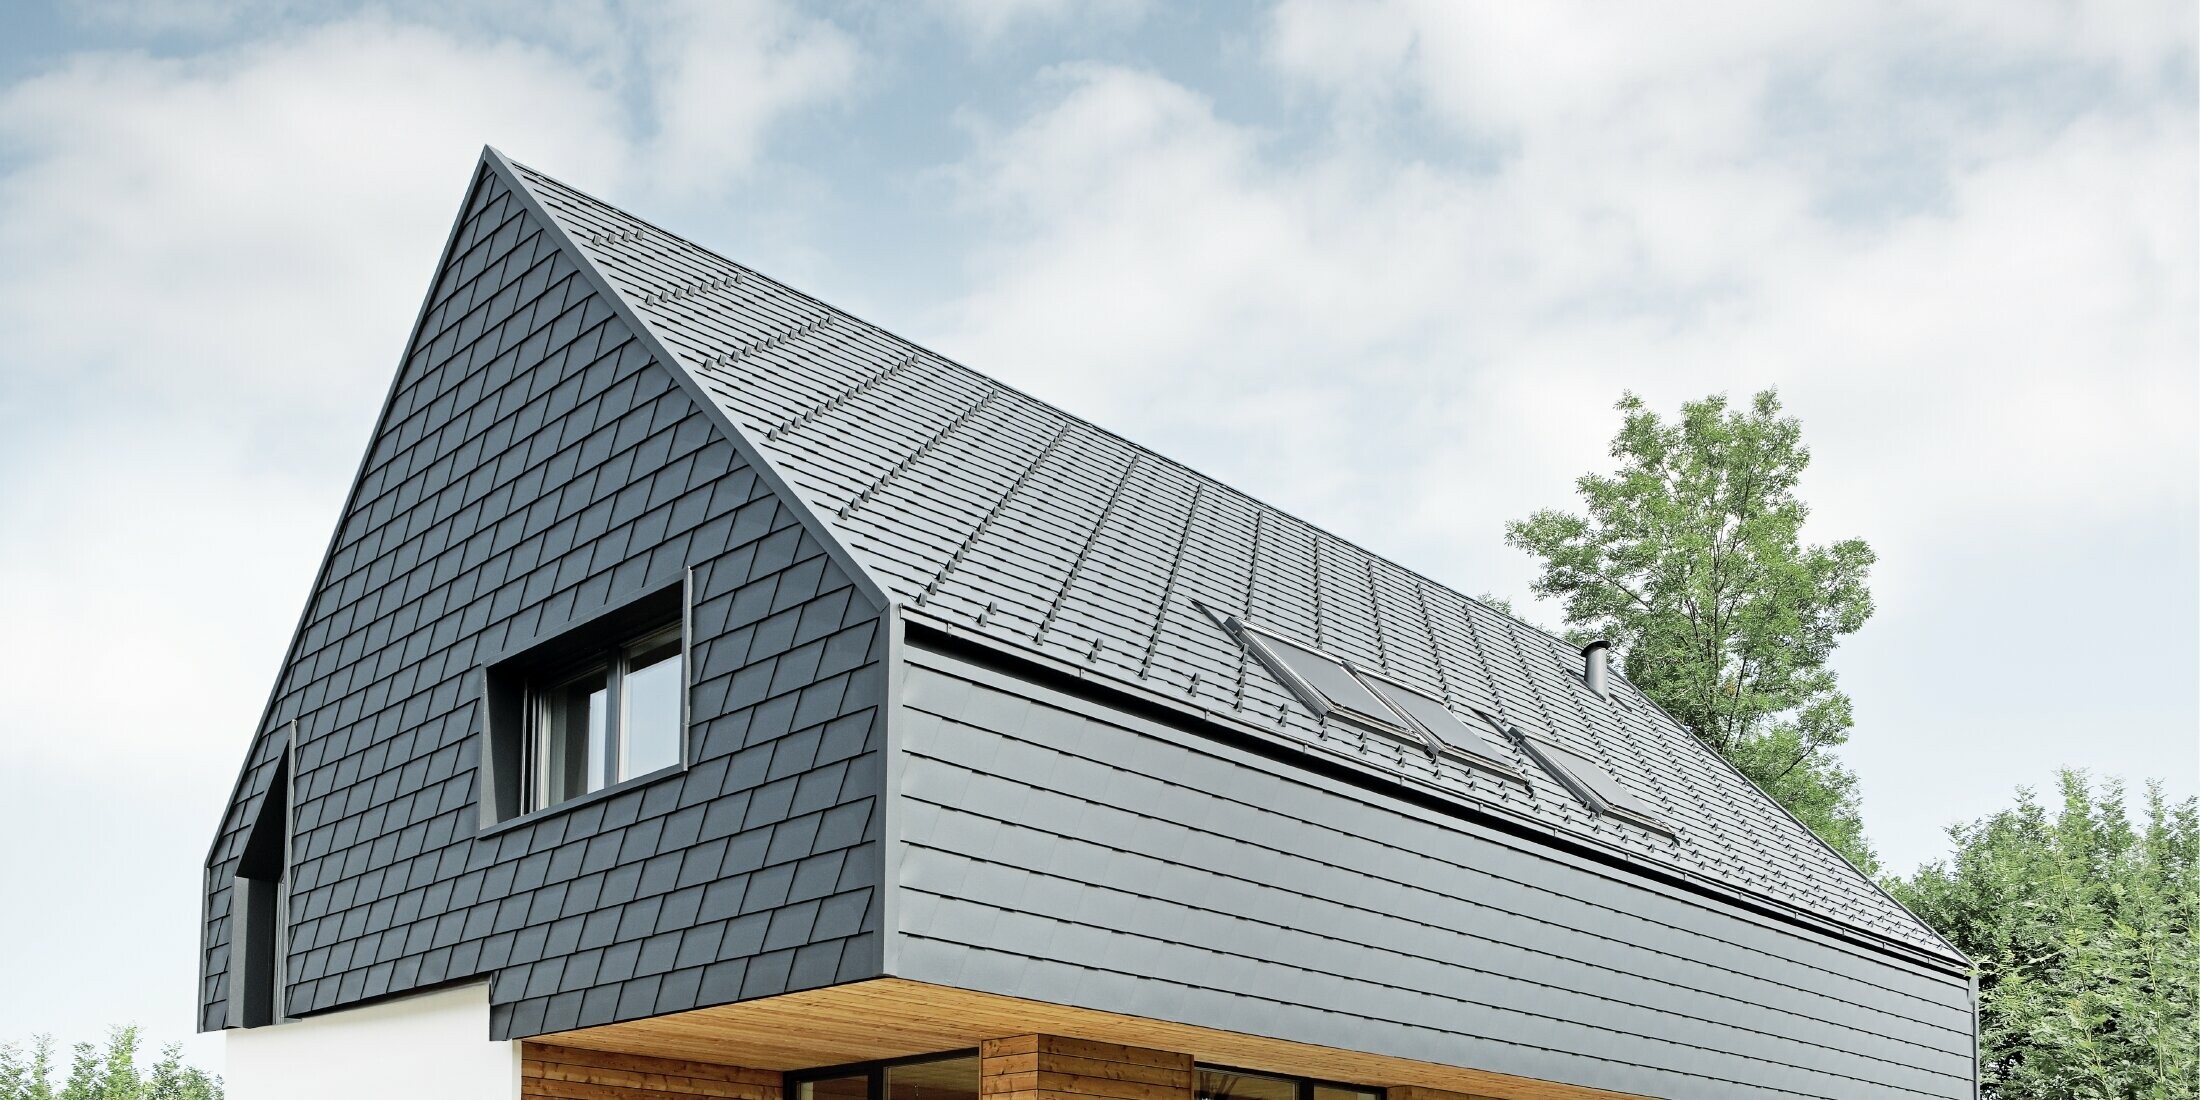 Rodinný domek se sedlovou střechou, pokrytý PREFA šindelem v barvě P.10 antracitové; šindele jsou použity také na fasádě v horním podlaží a na štítu